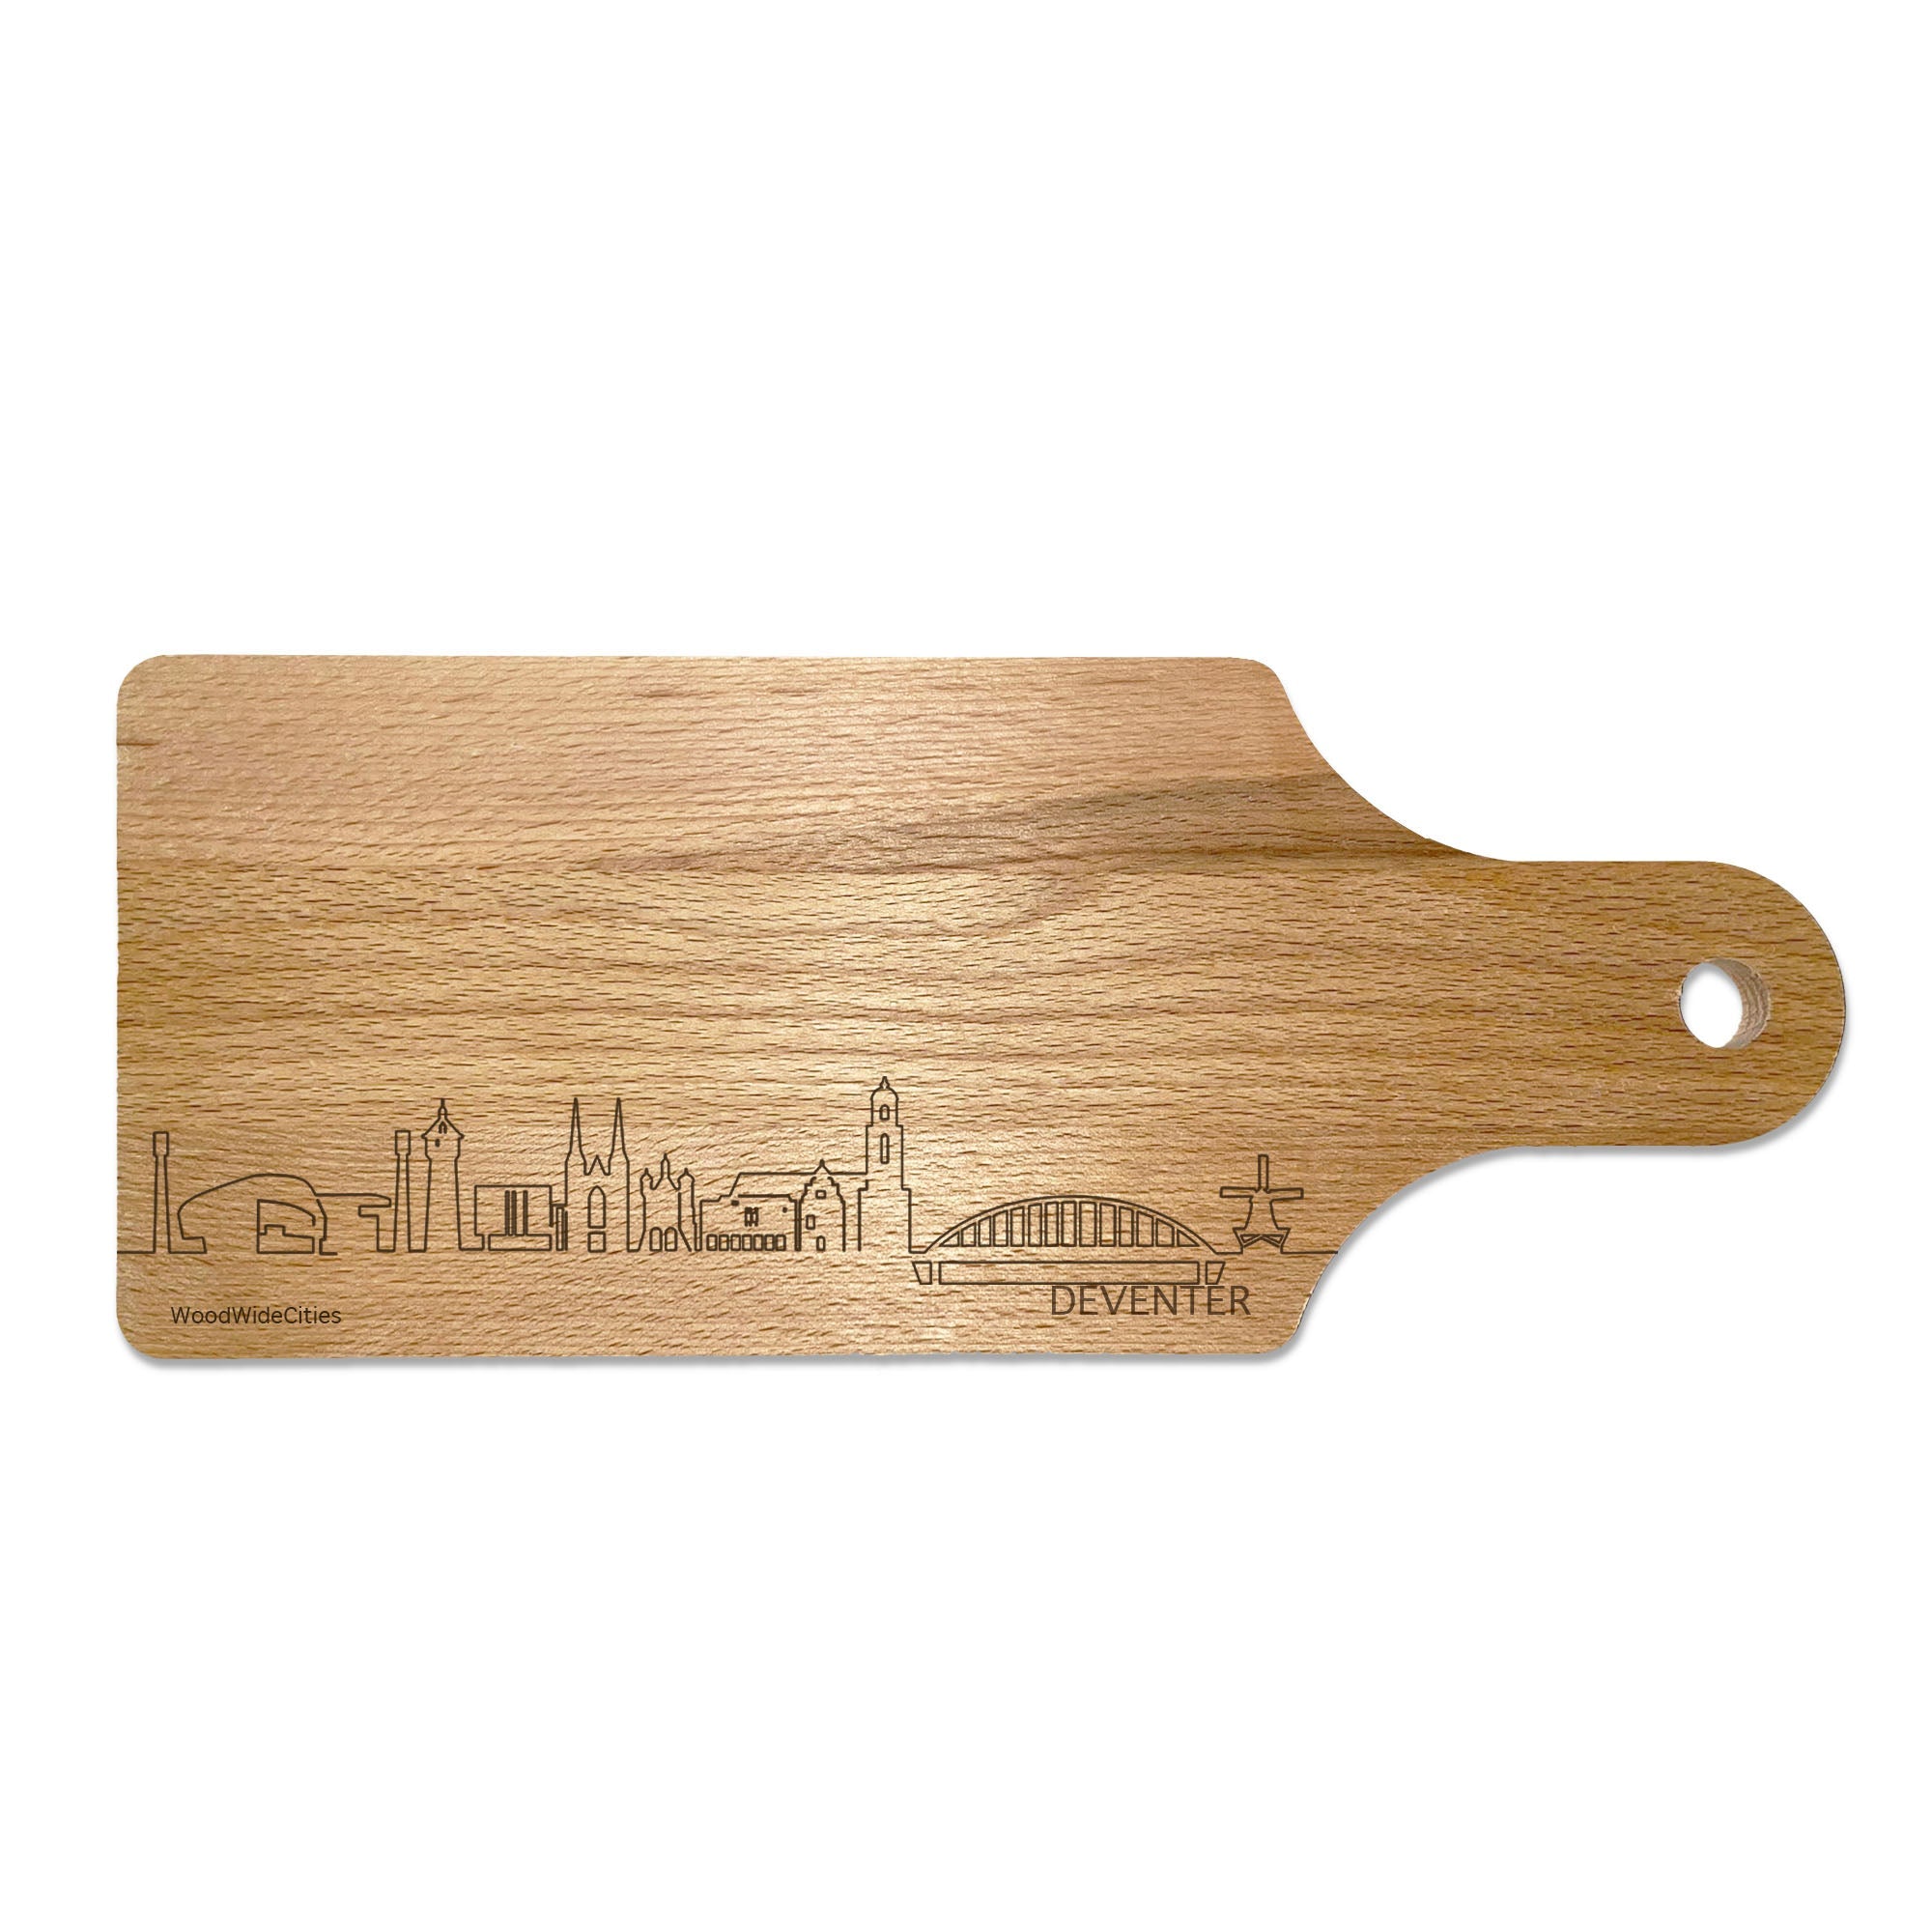 Skyline Borrelplank Deventer houten cadeau decoratie relatiegeschenk van WoodWideCities